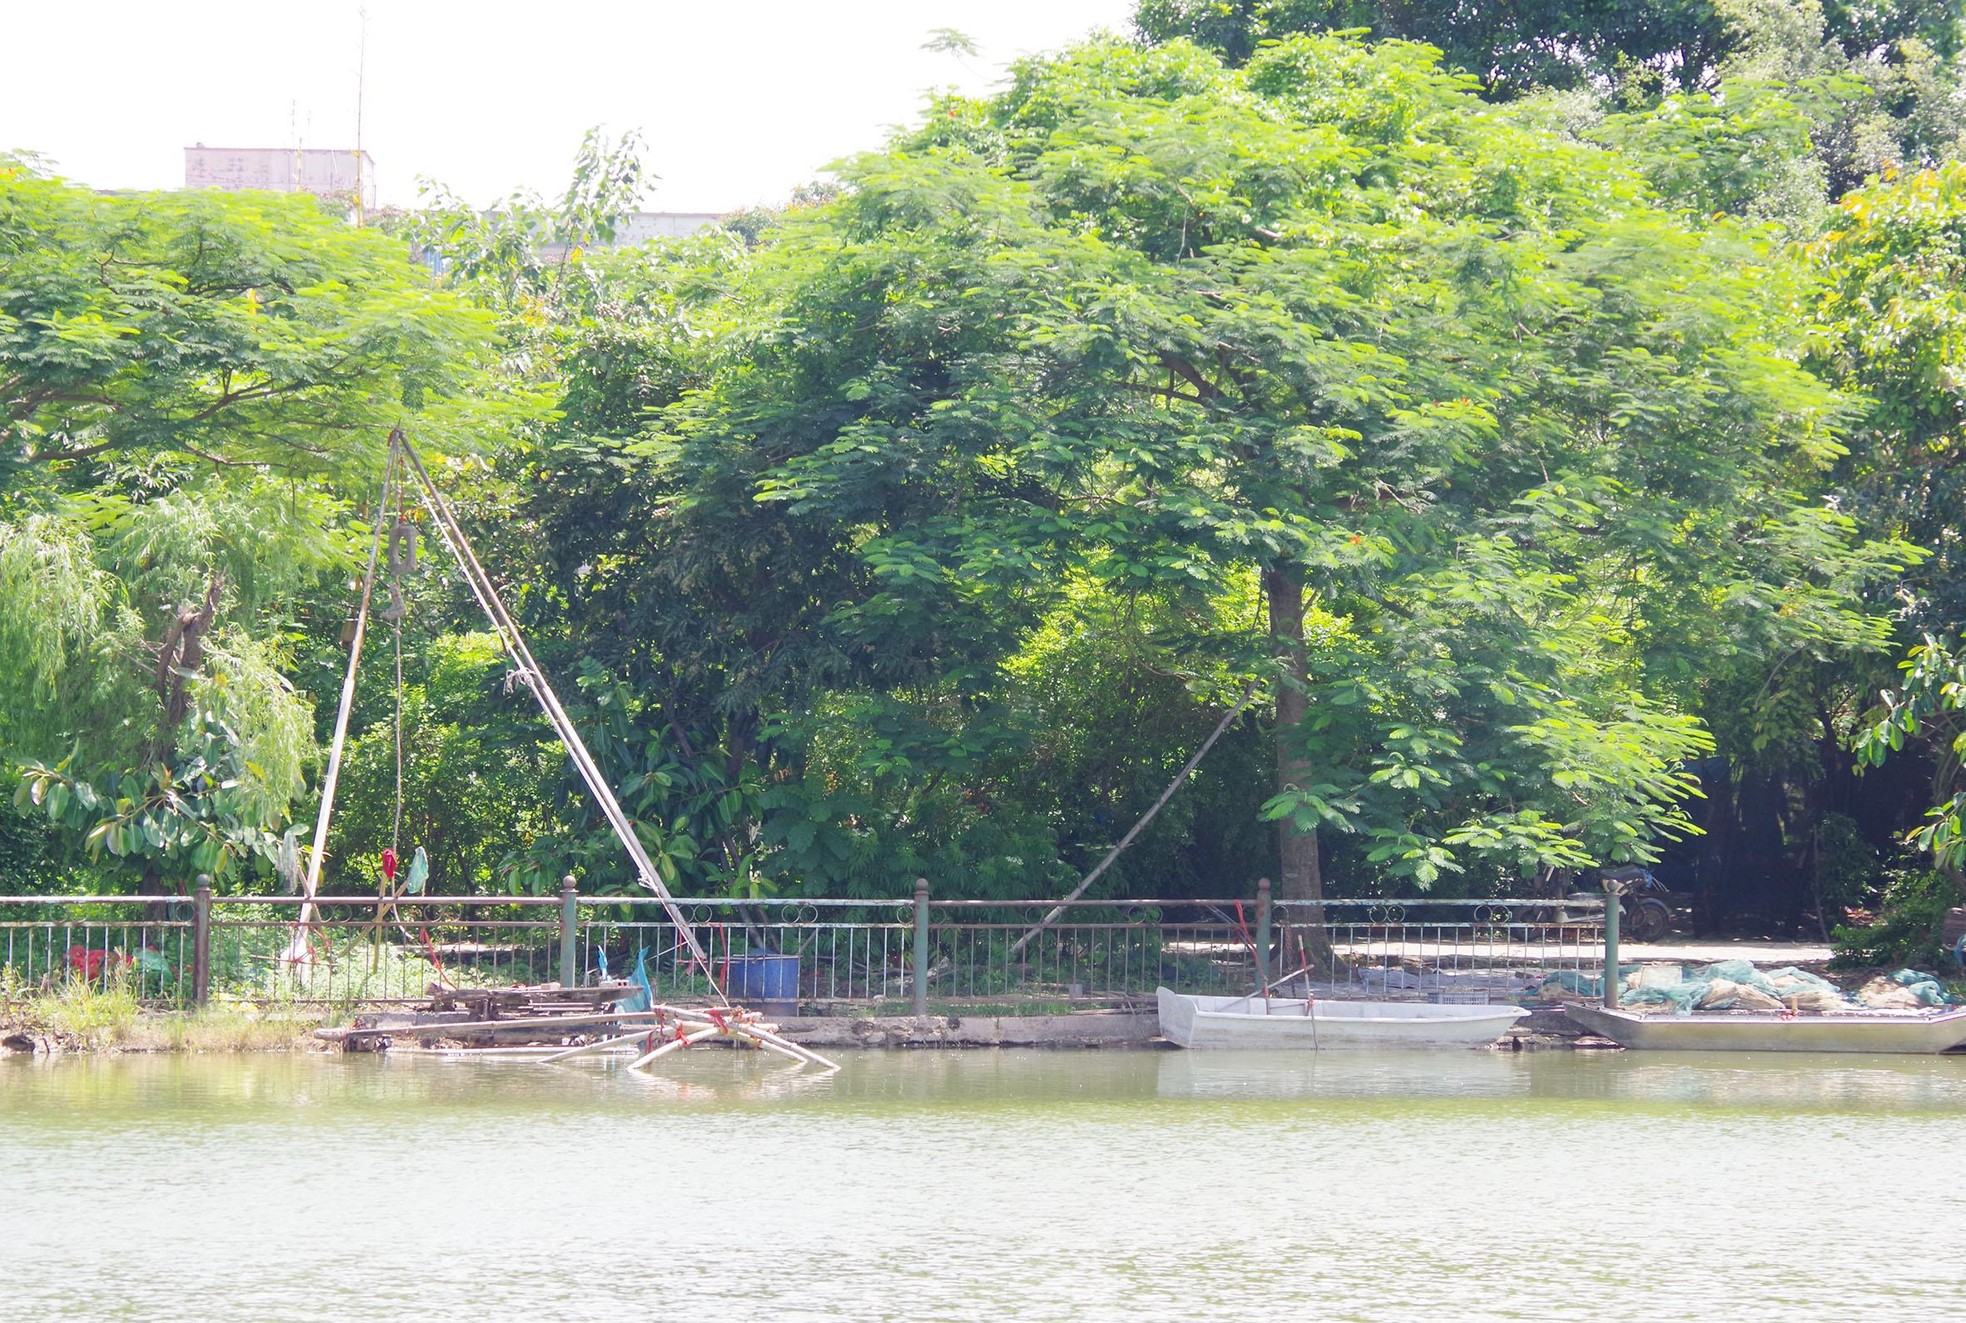 Công viên rộng hơn 15 ha bỏ hoang ở quận nội thành Hà Nội, dân không dám vào vì sợ rắn rết